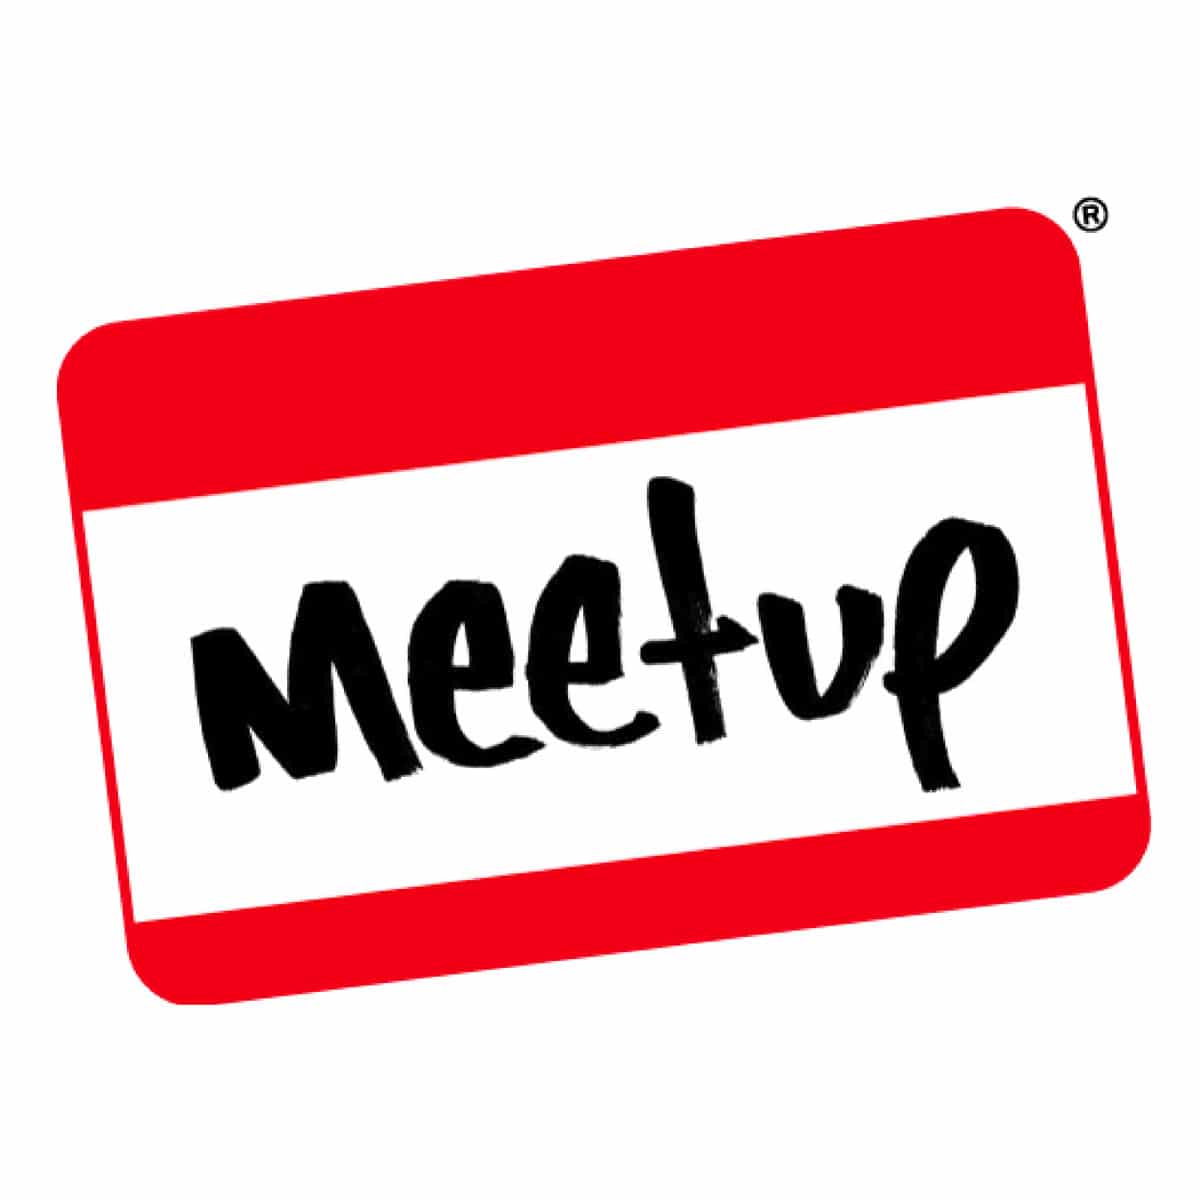 meetup website logo